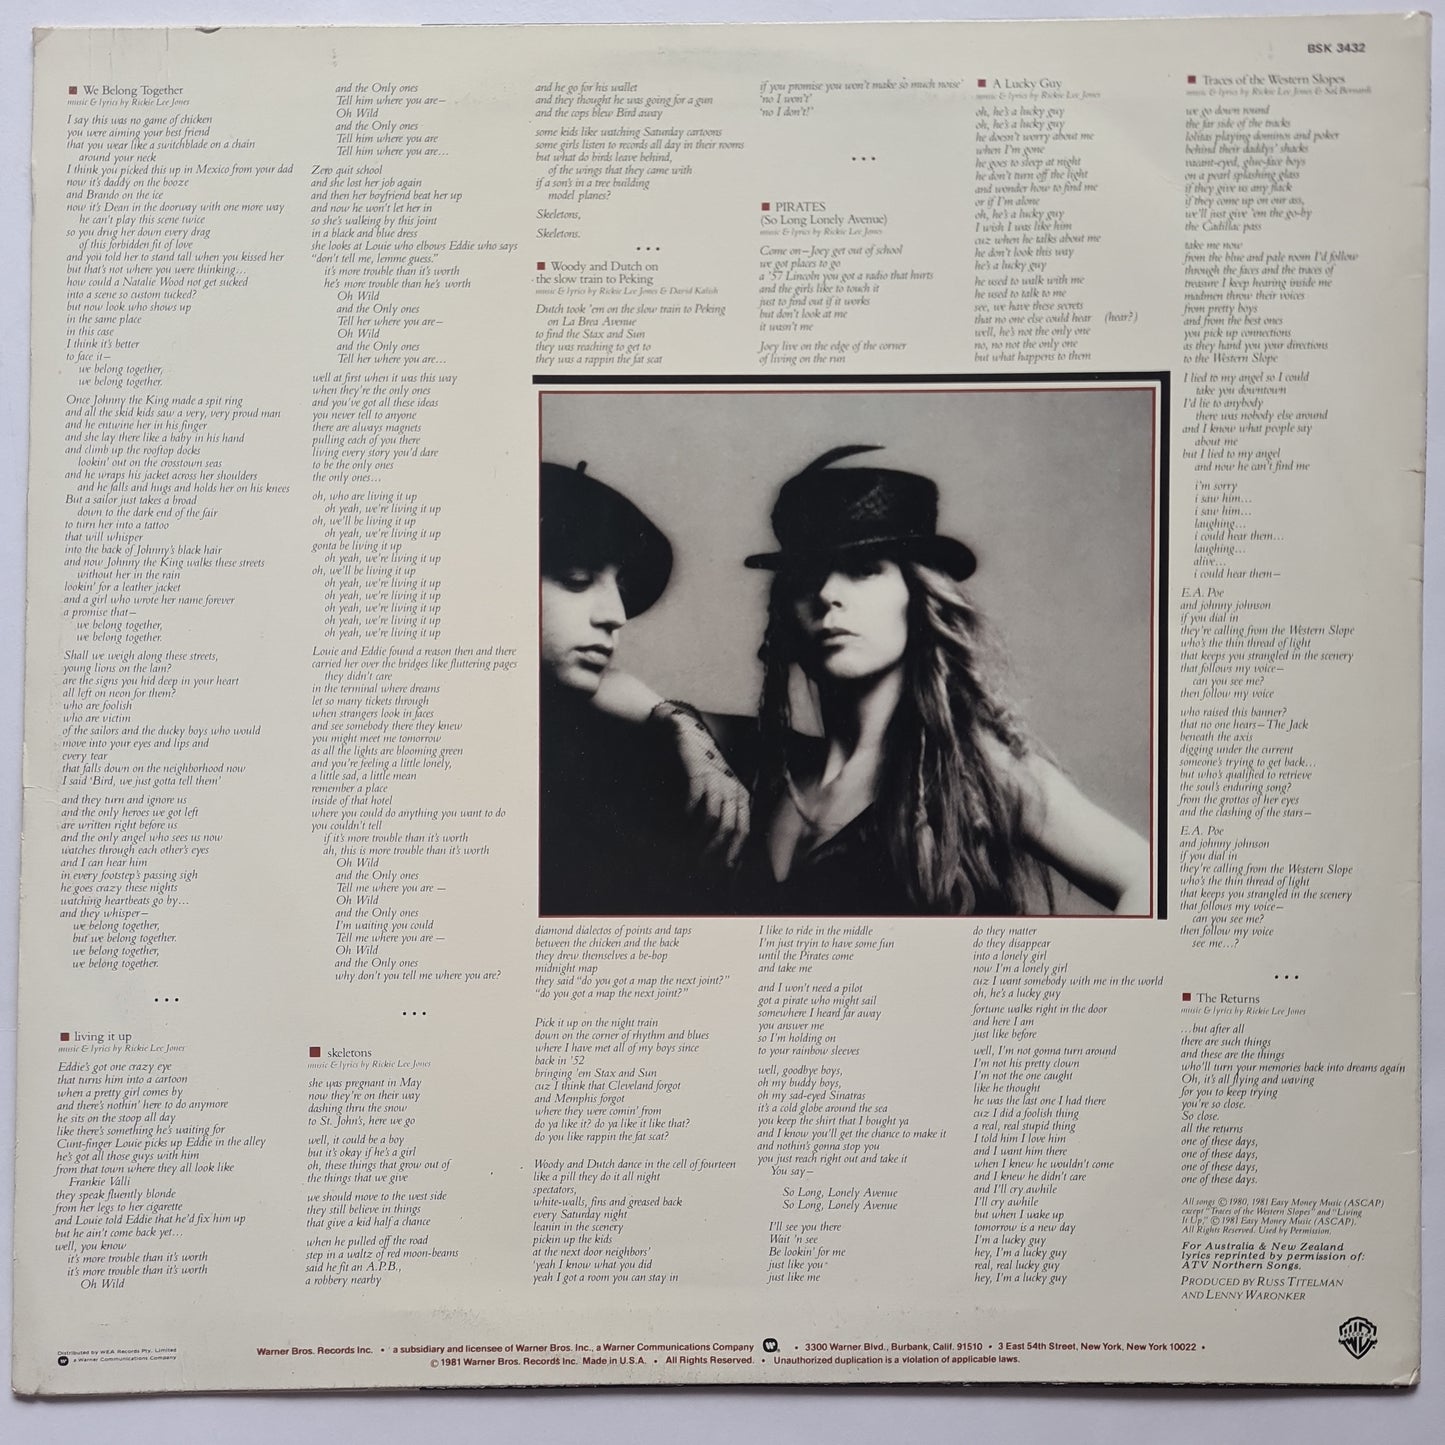 Rickie Lee Jones – Pirates - 1981 - Vinyl Record